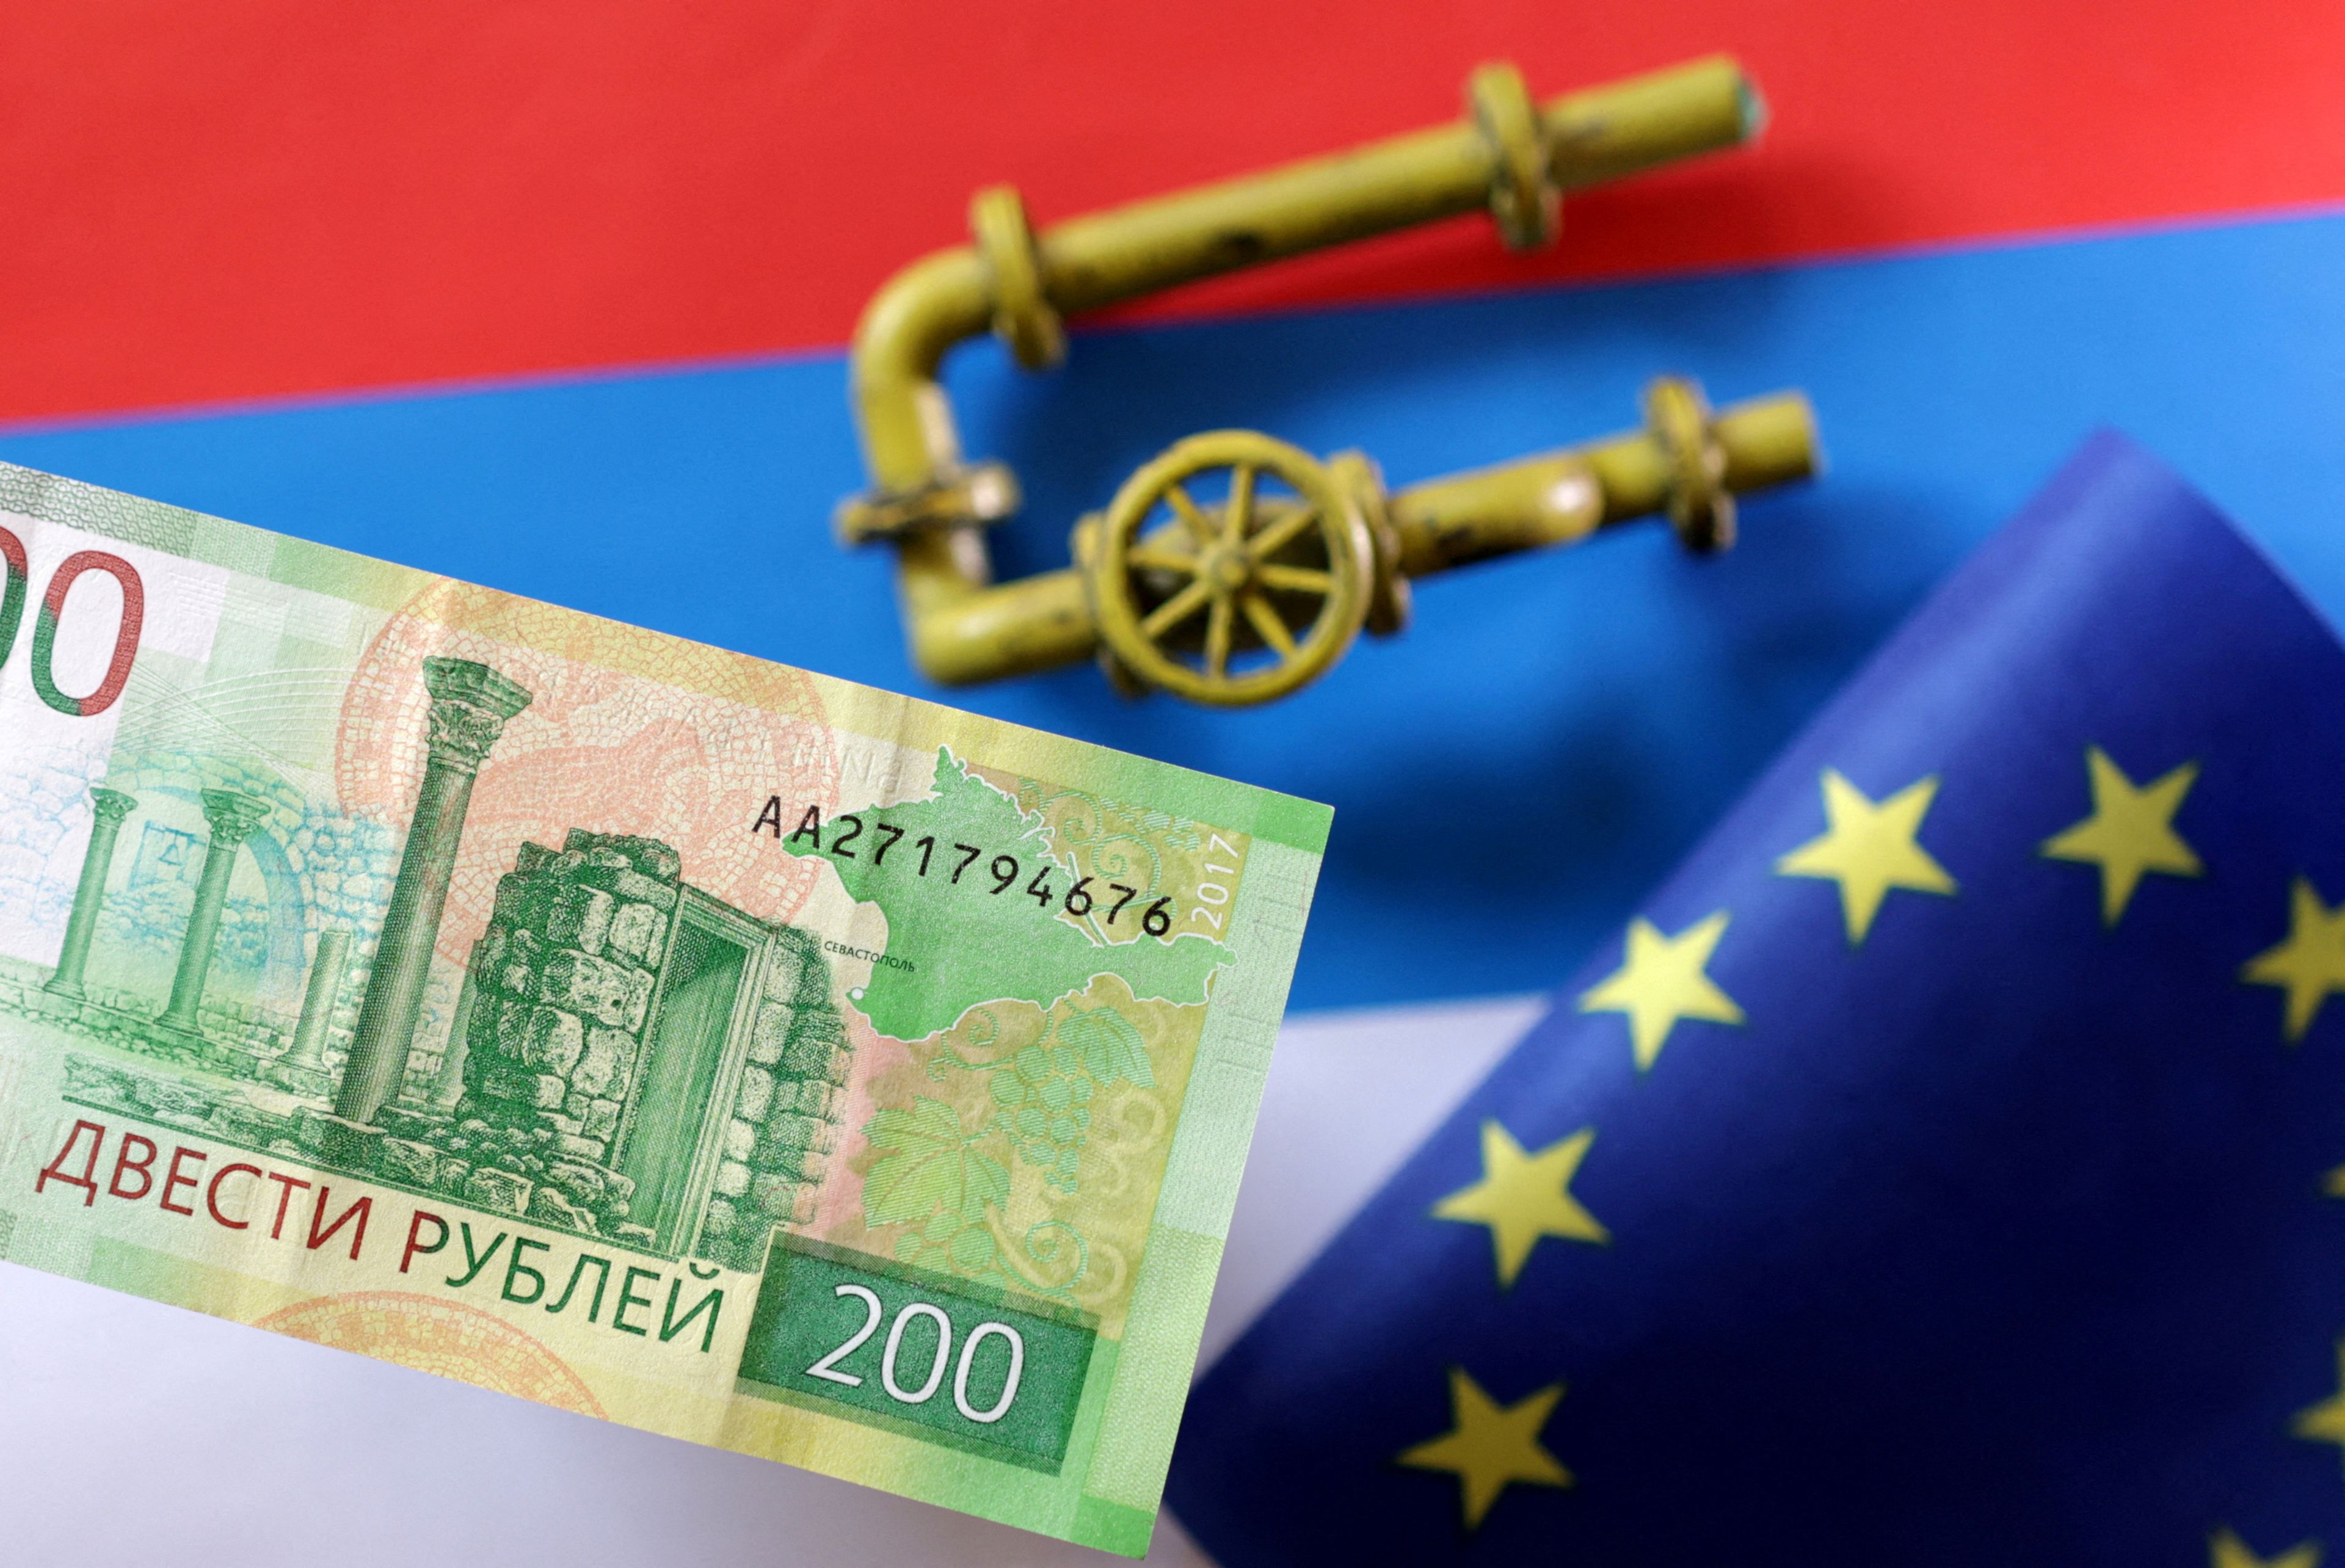 Una bandera de Rusia, otra de Europa, una tubería de gas y un billete de 200 rublos.